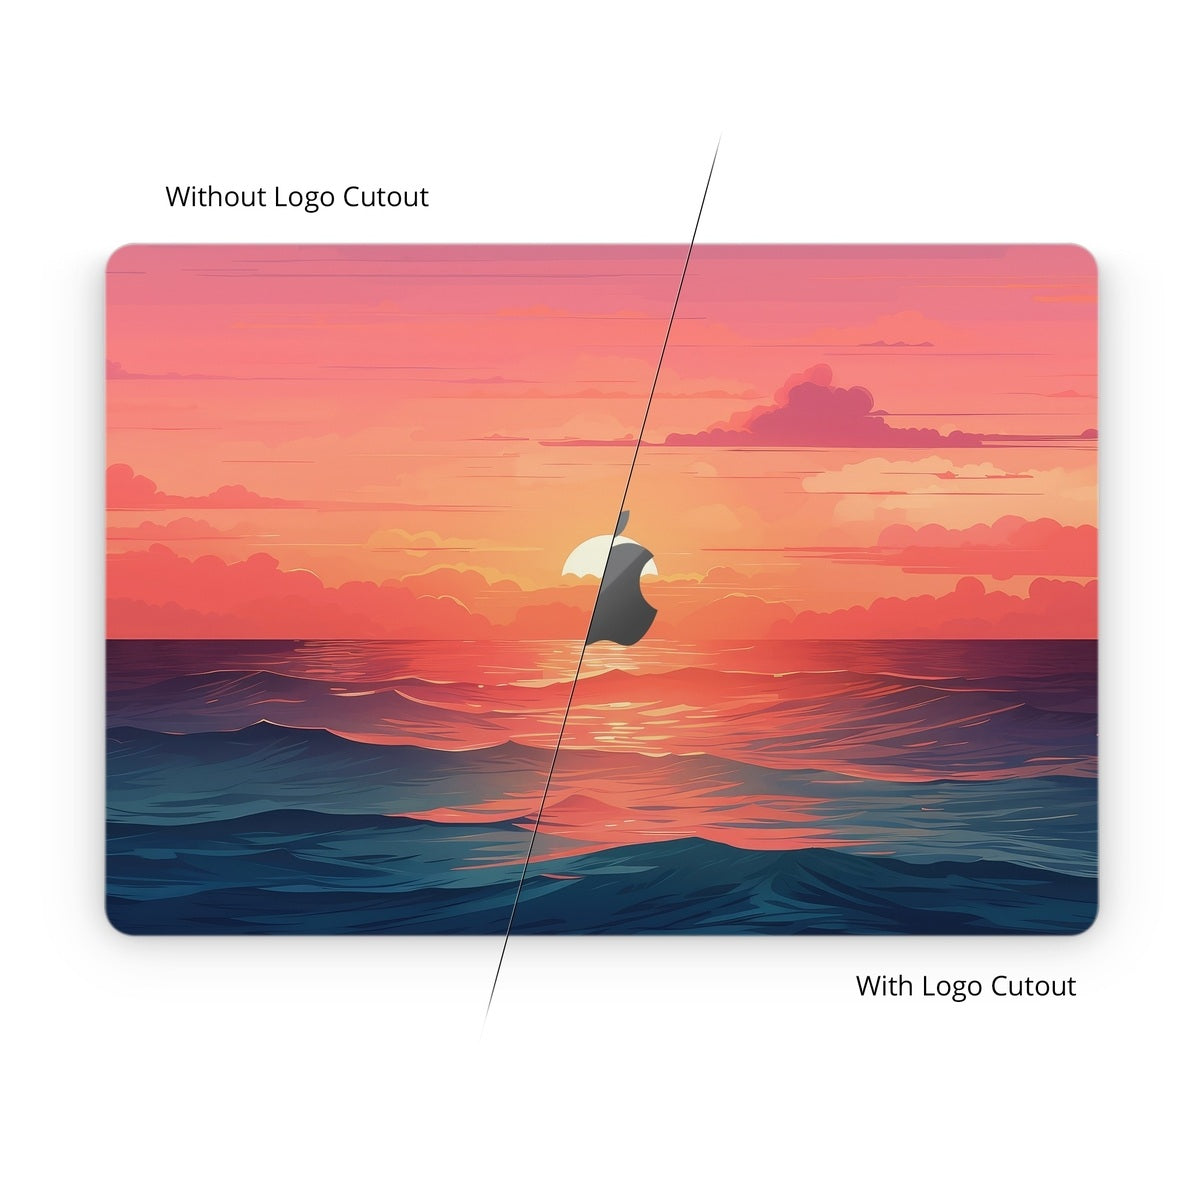 Floating Home - Apple MacBook Skin